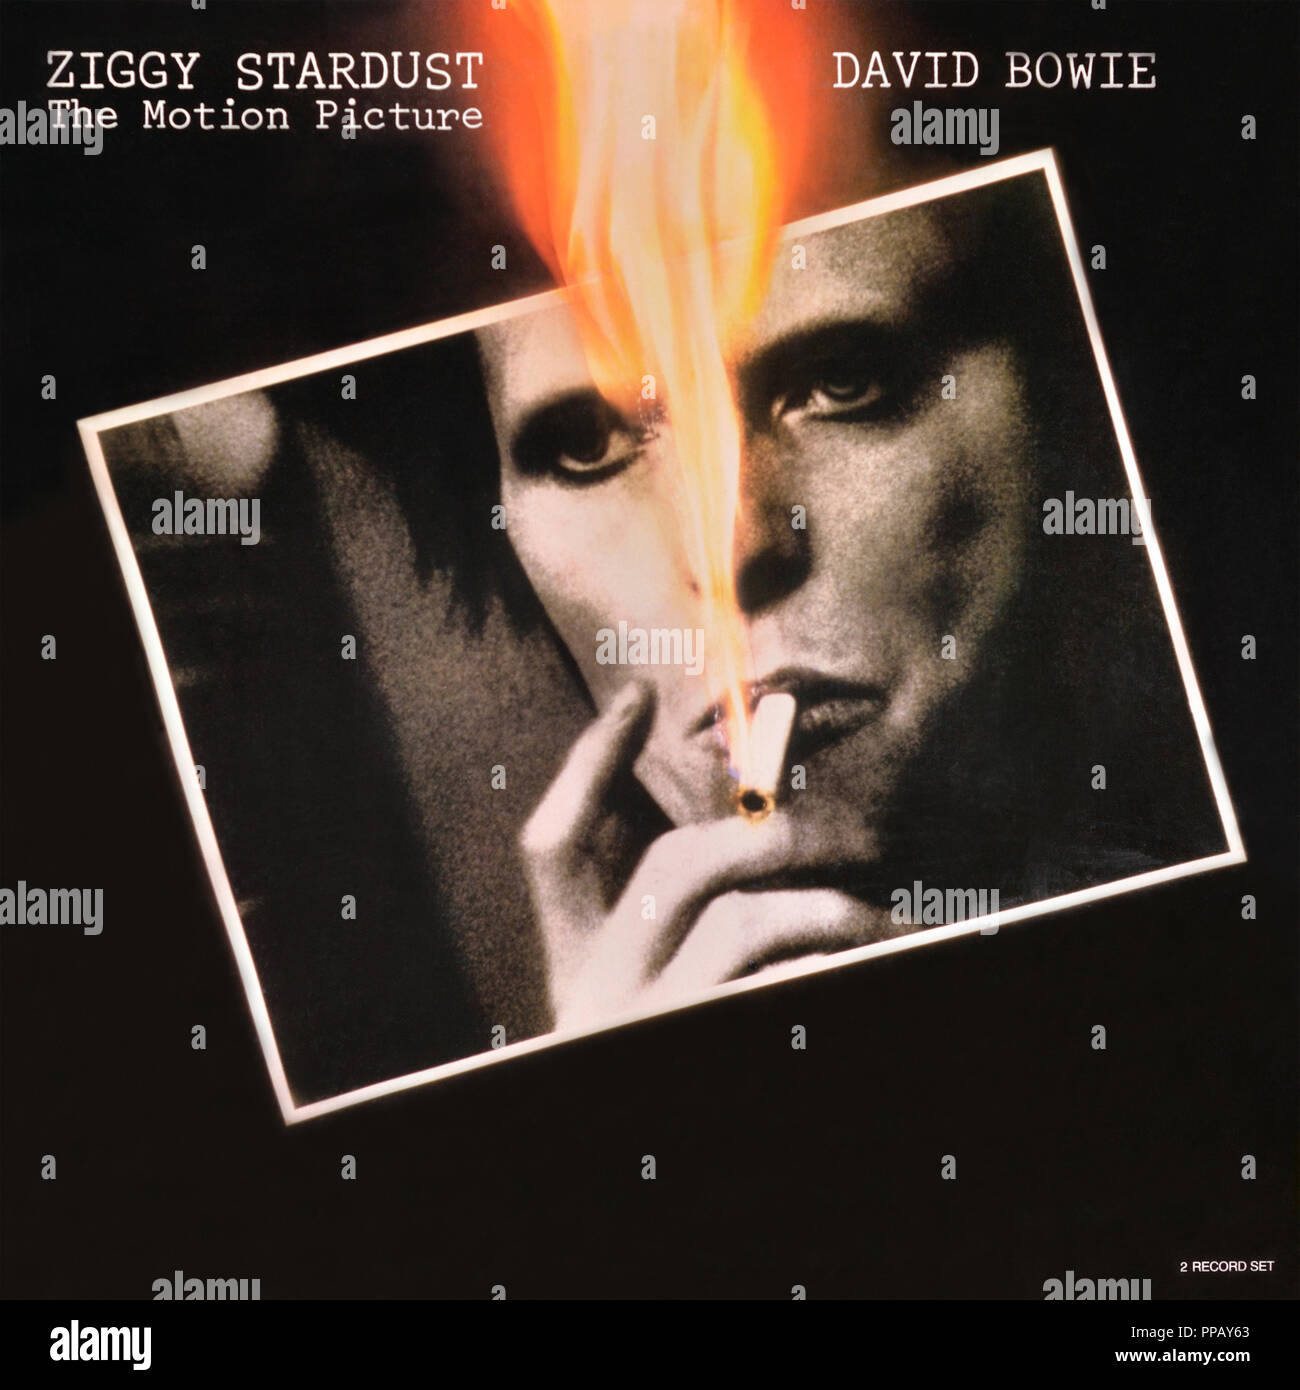 David Bowie - copertina originale dell'album in vinile - Ziggy Sturdust l'immagine del film - 1983 Foto Stock